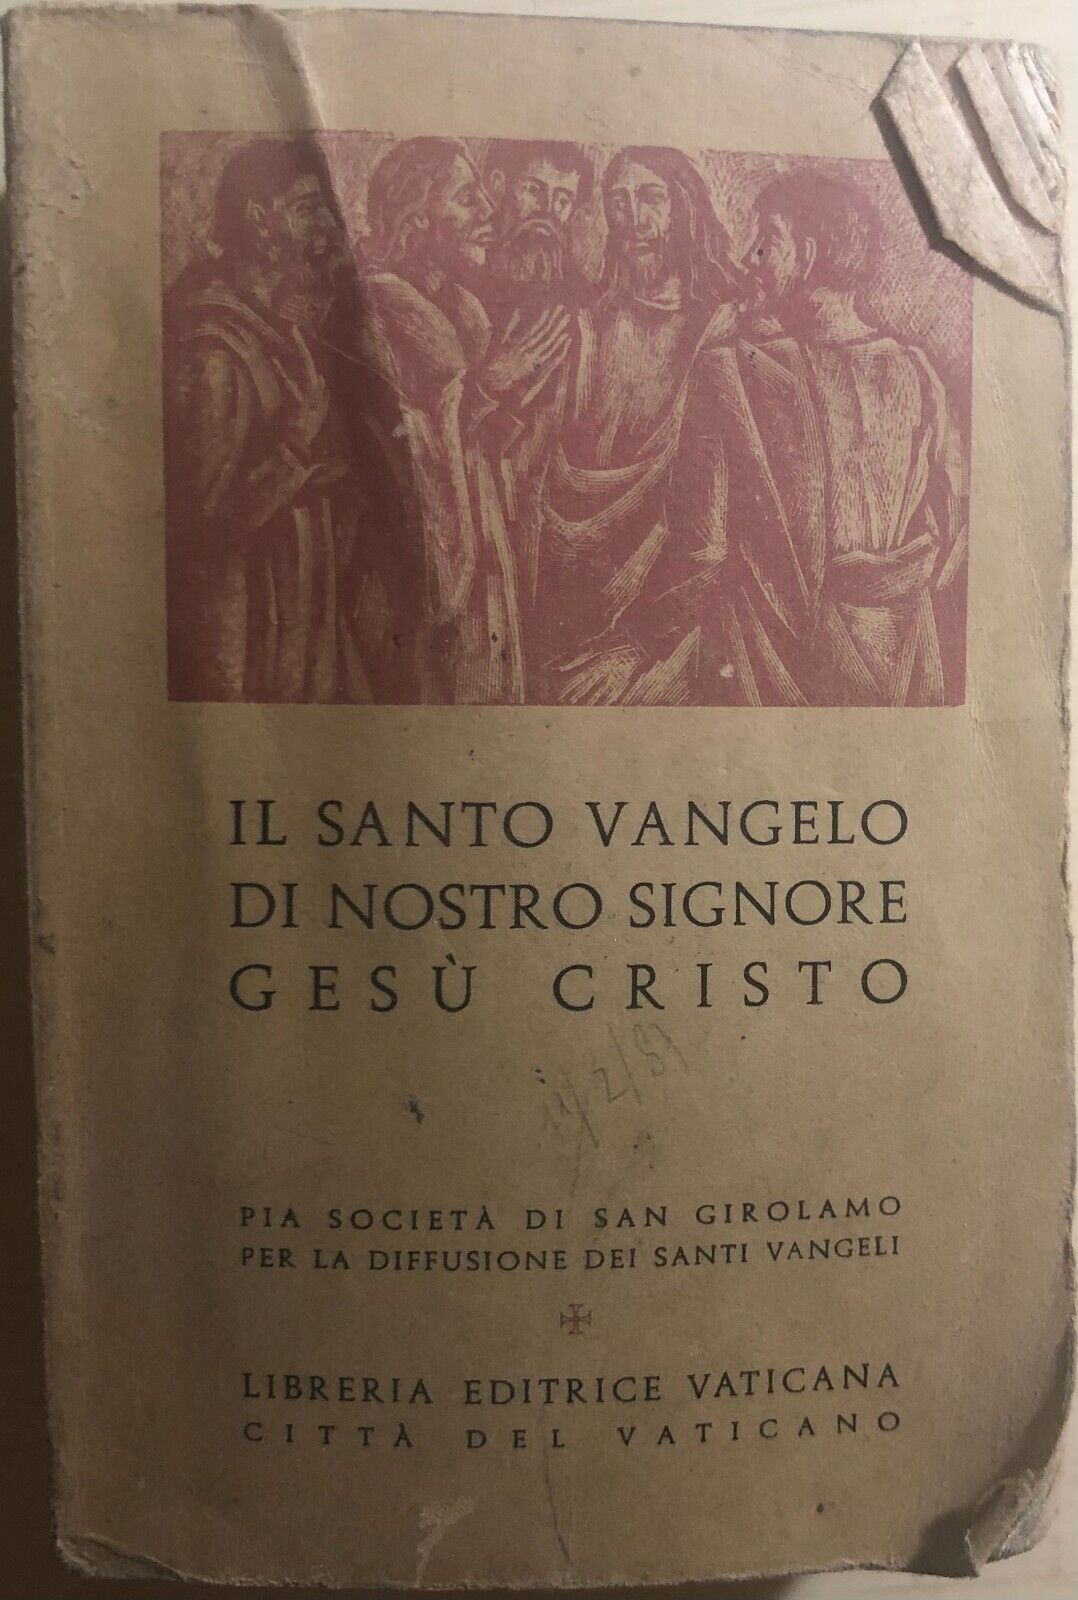 Il Santo Vangelo di Nostro Signore di Pia Societ? Di San Girolamo,  1977,  Libre